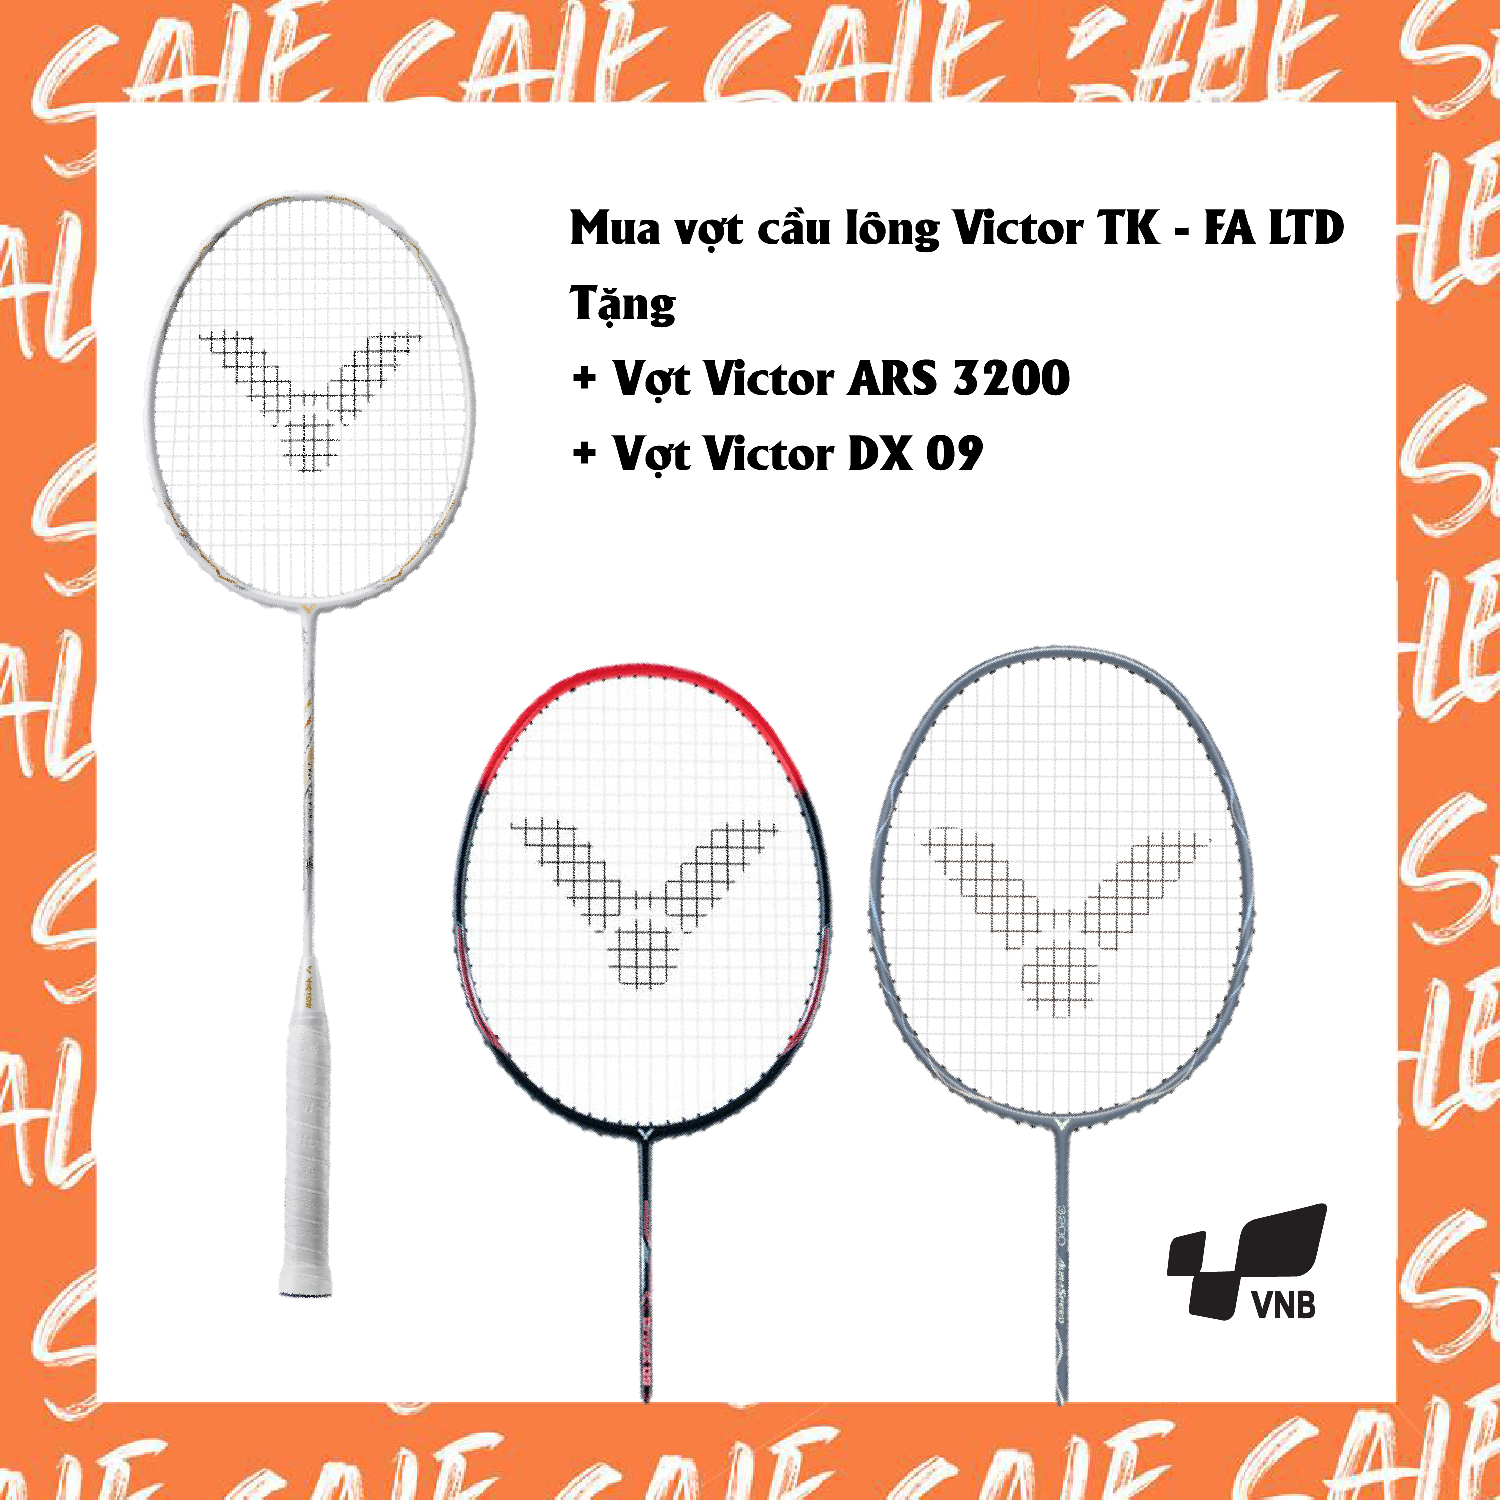 Combo mua vợt cầu lông Victor TK - FA LTD tặng vợt Victor ARS 3200   vợt Victor DX 09